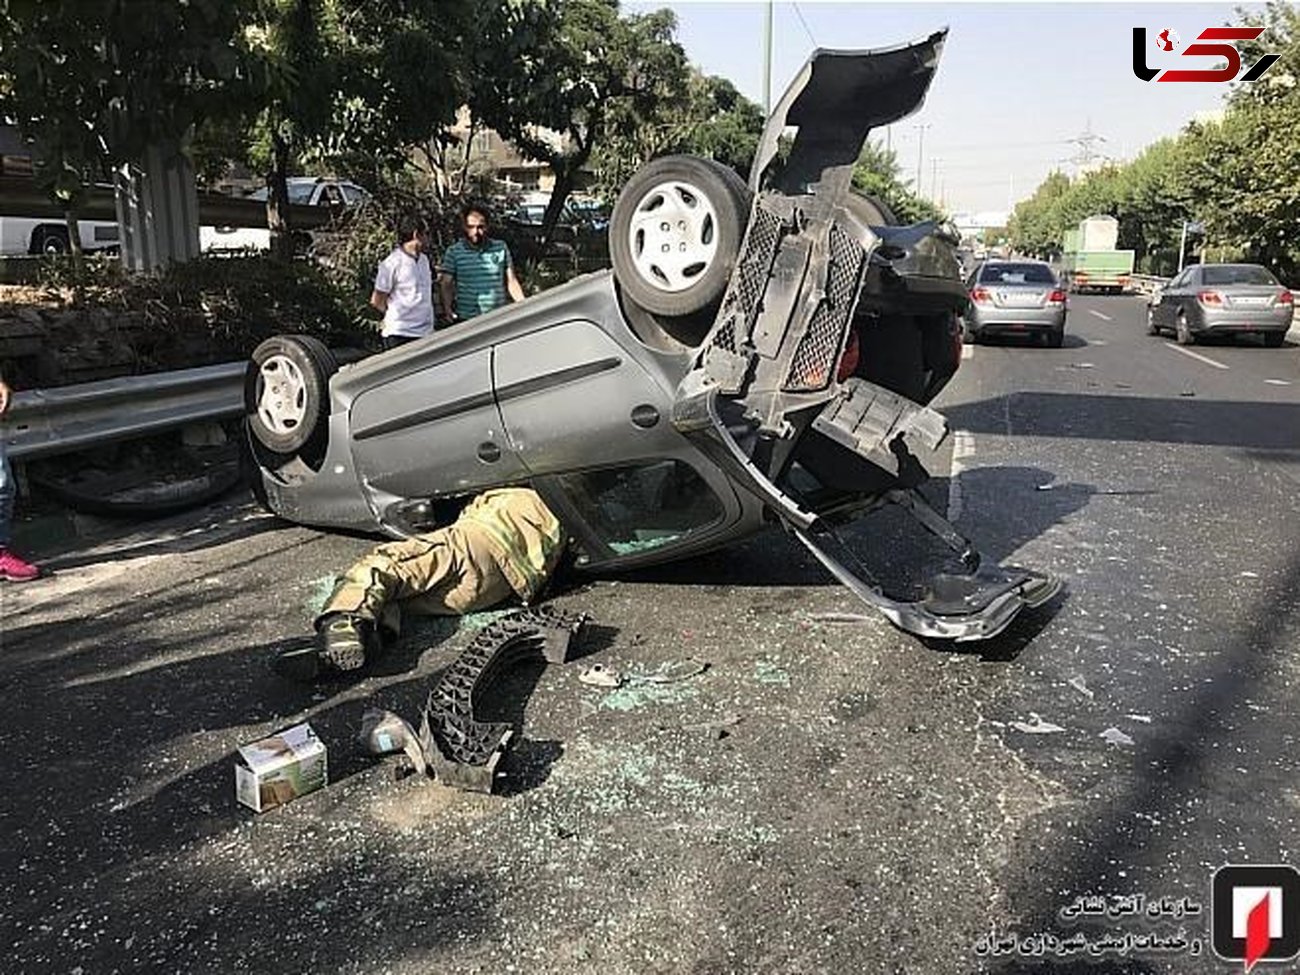 واژگون شدن پژو ۲۰۶ پس از تصادف با دنا در بزرگراه حکیم تهران + عکس 